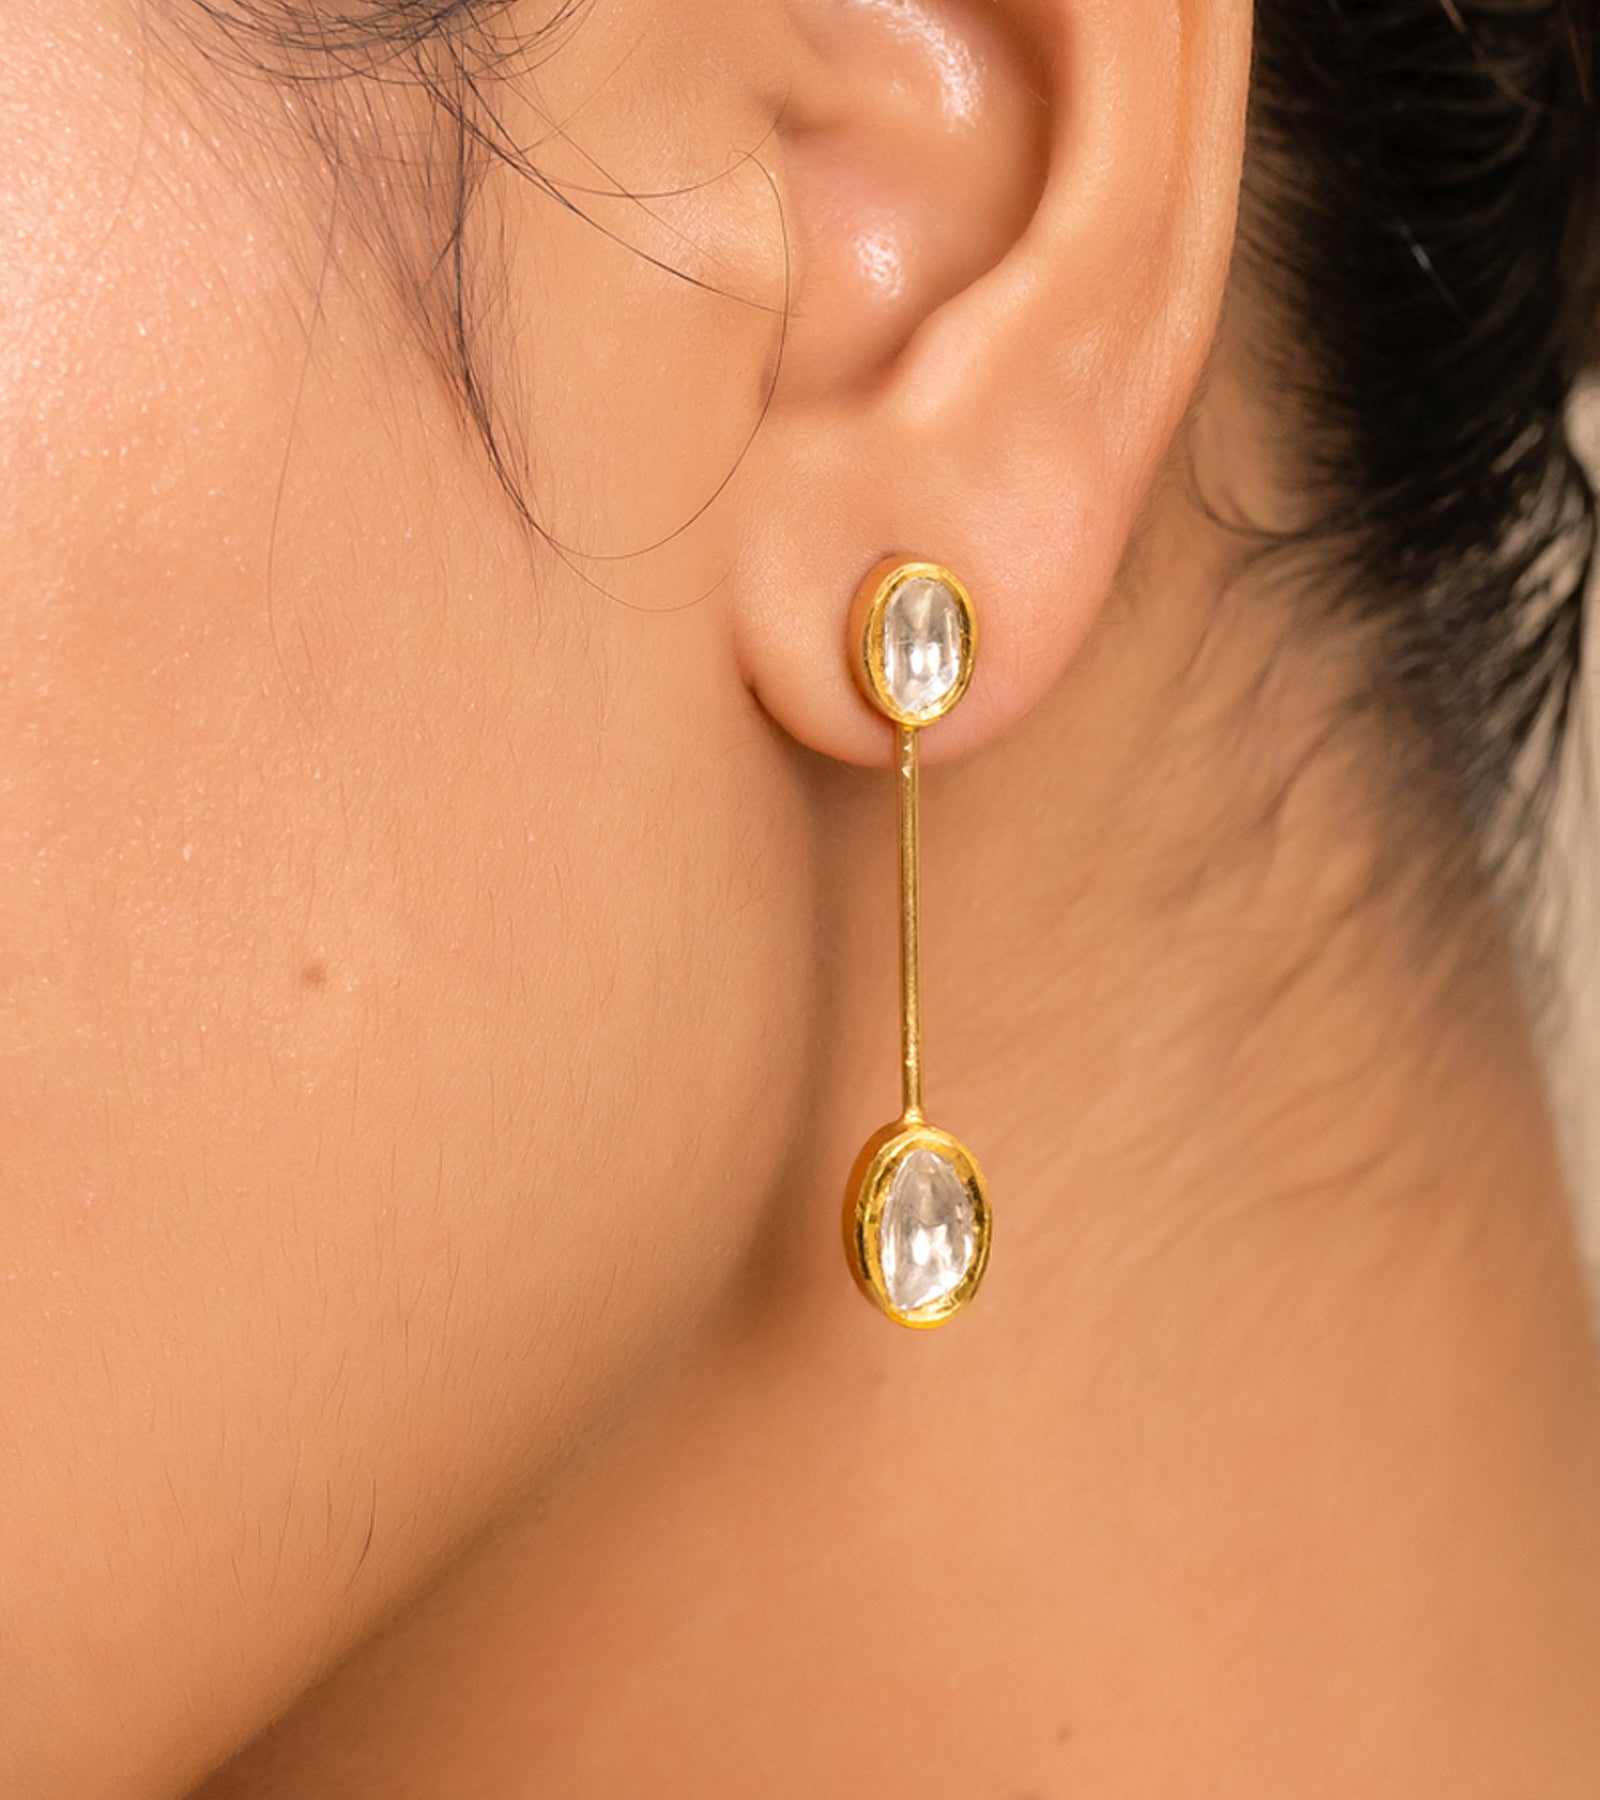 Polki Earrings by UNCUT Jewelry